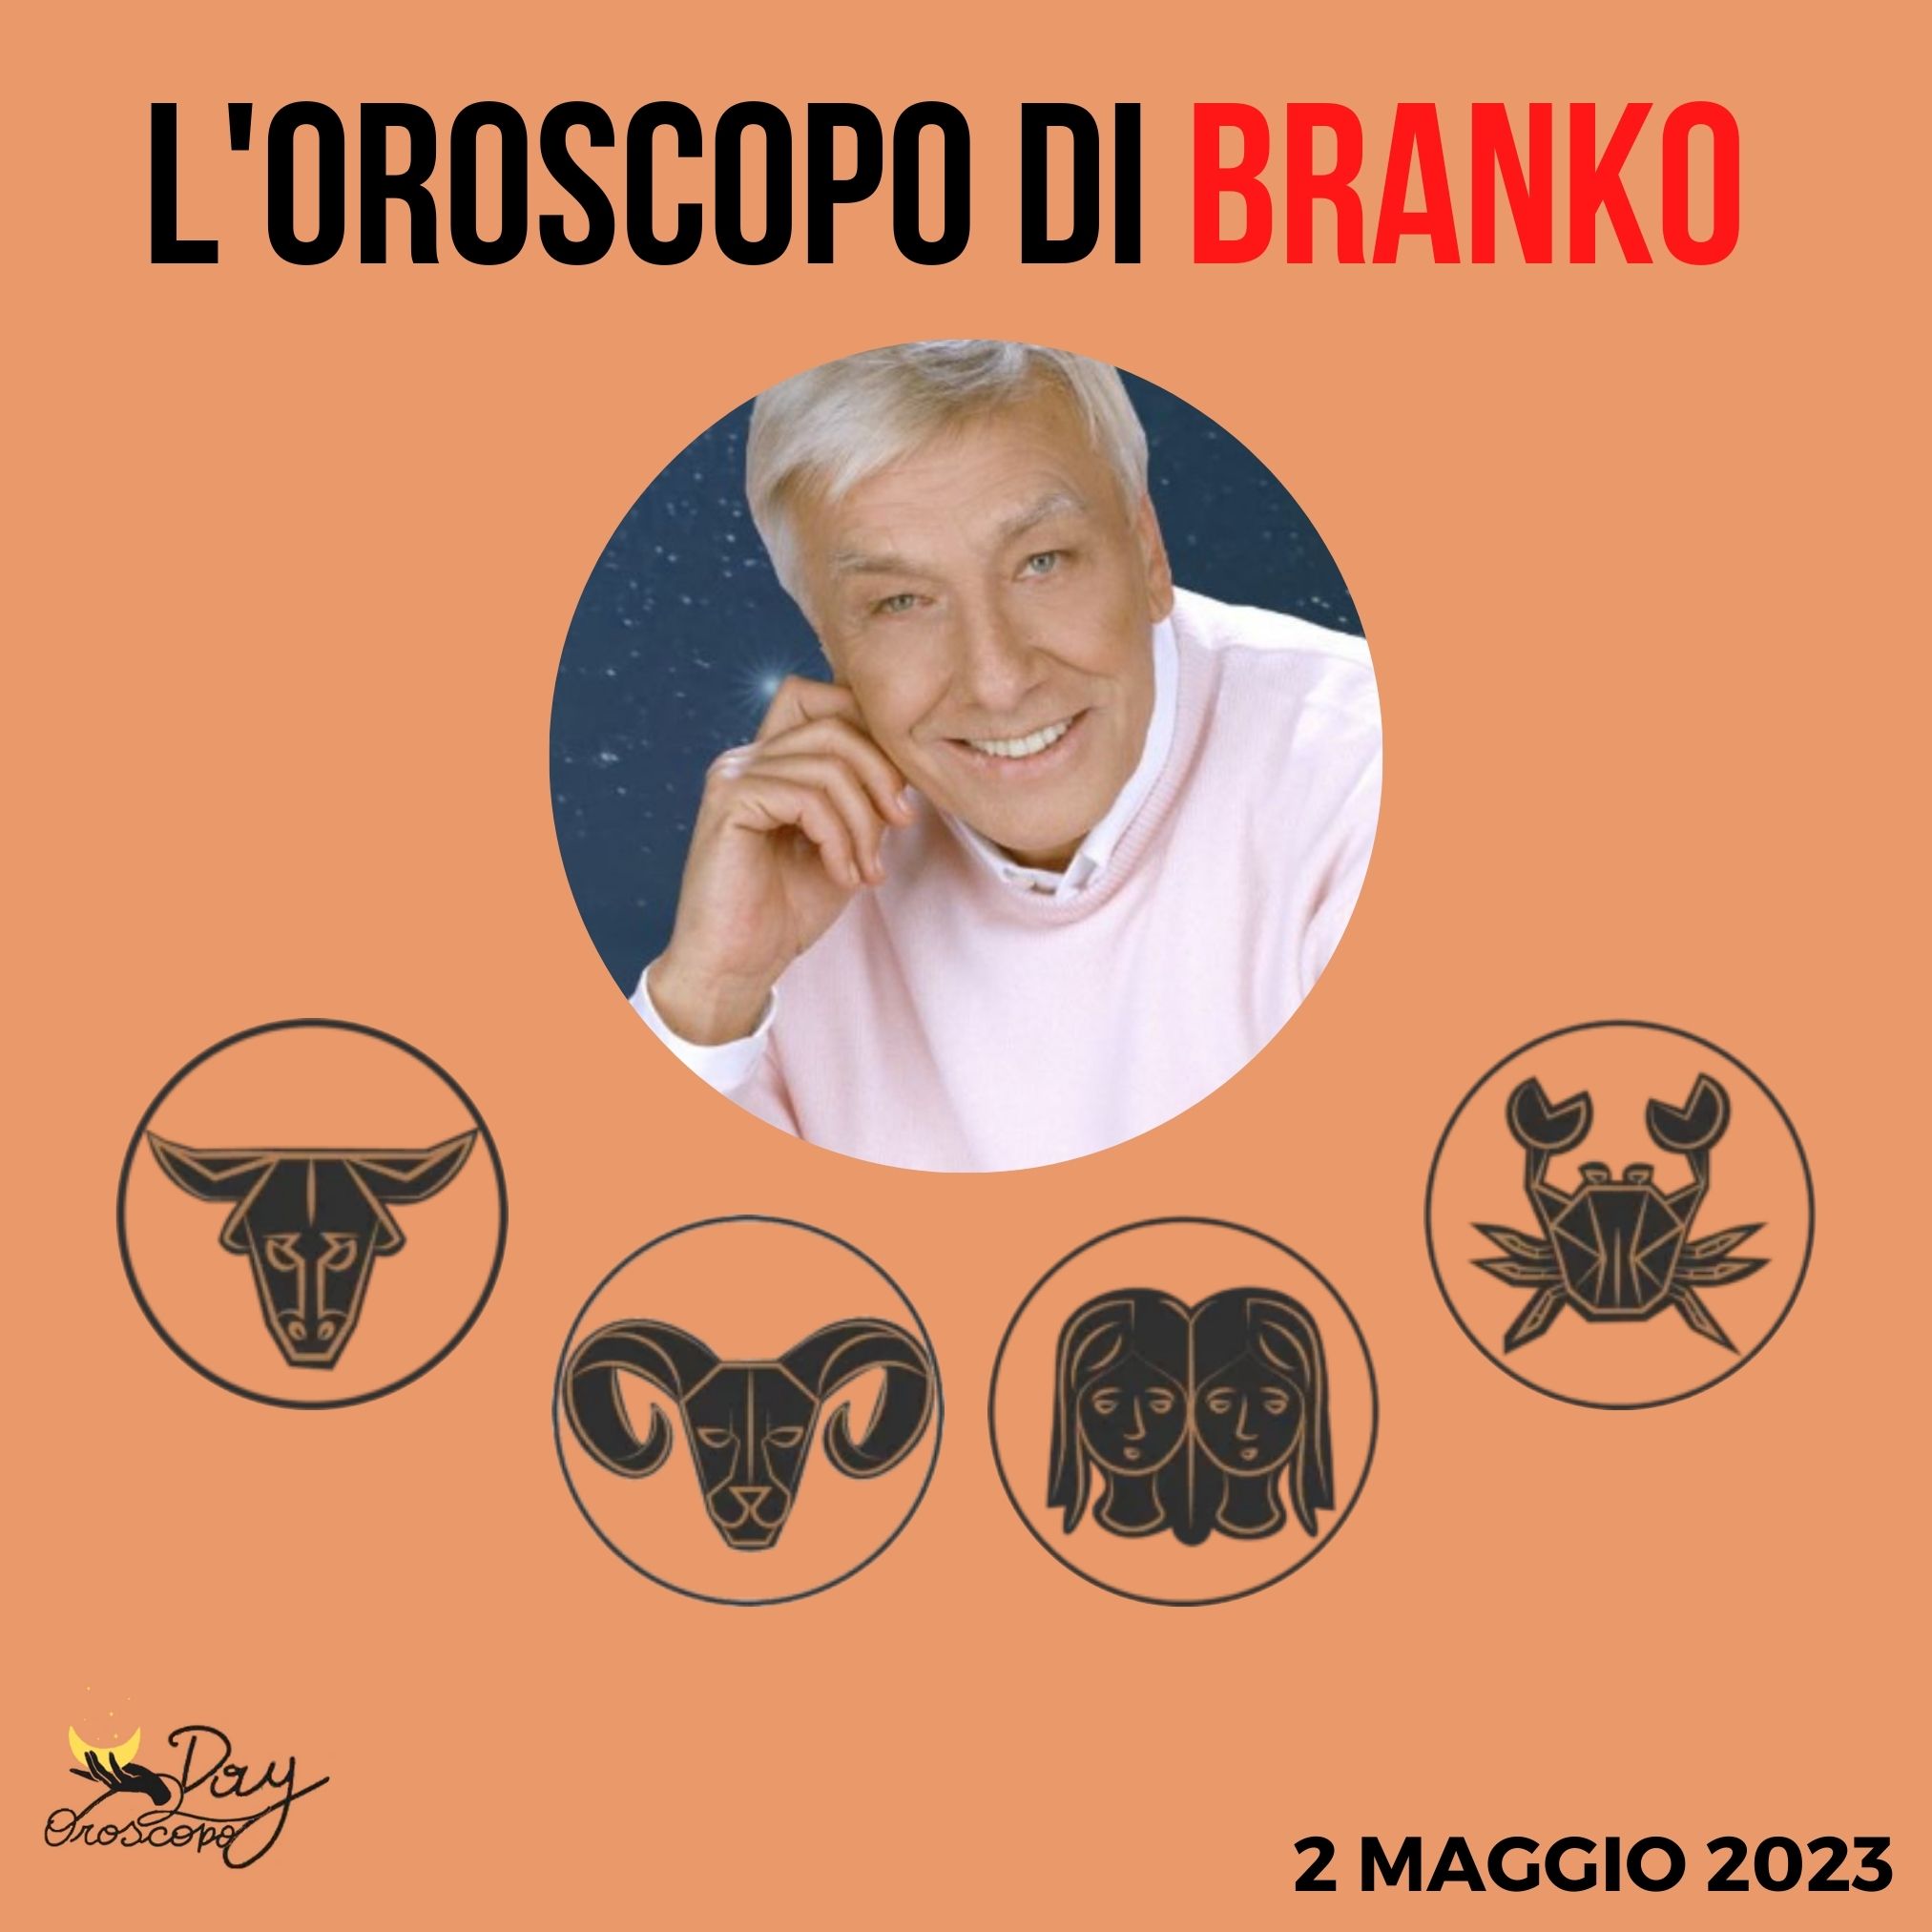 Oroscopo oggi domani Branko 2 maggio Toro Ariete Gemelli Cancro